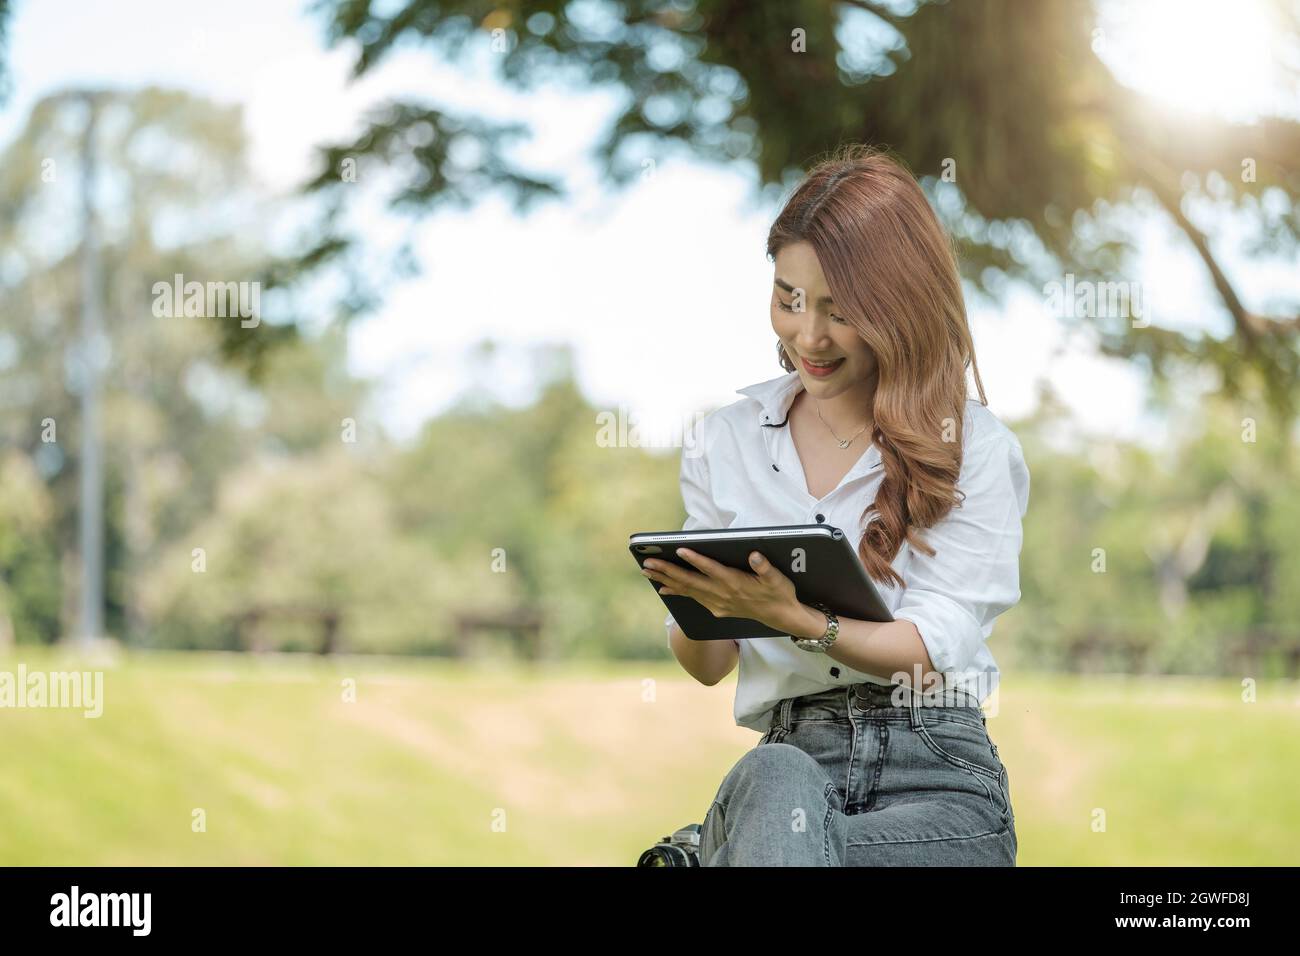 Une jeune fille étudiante travaillant avec une tablette numérique dans un parc vert Banque D'Images